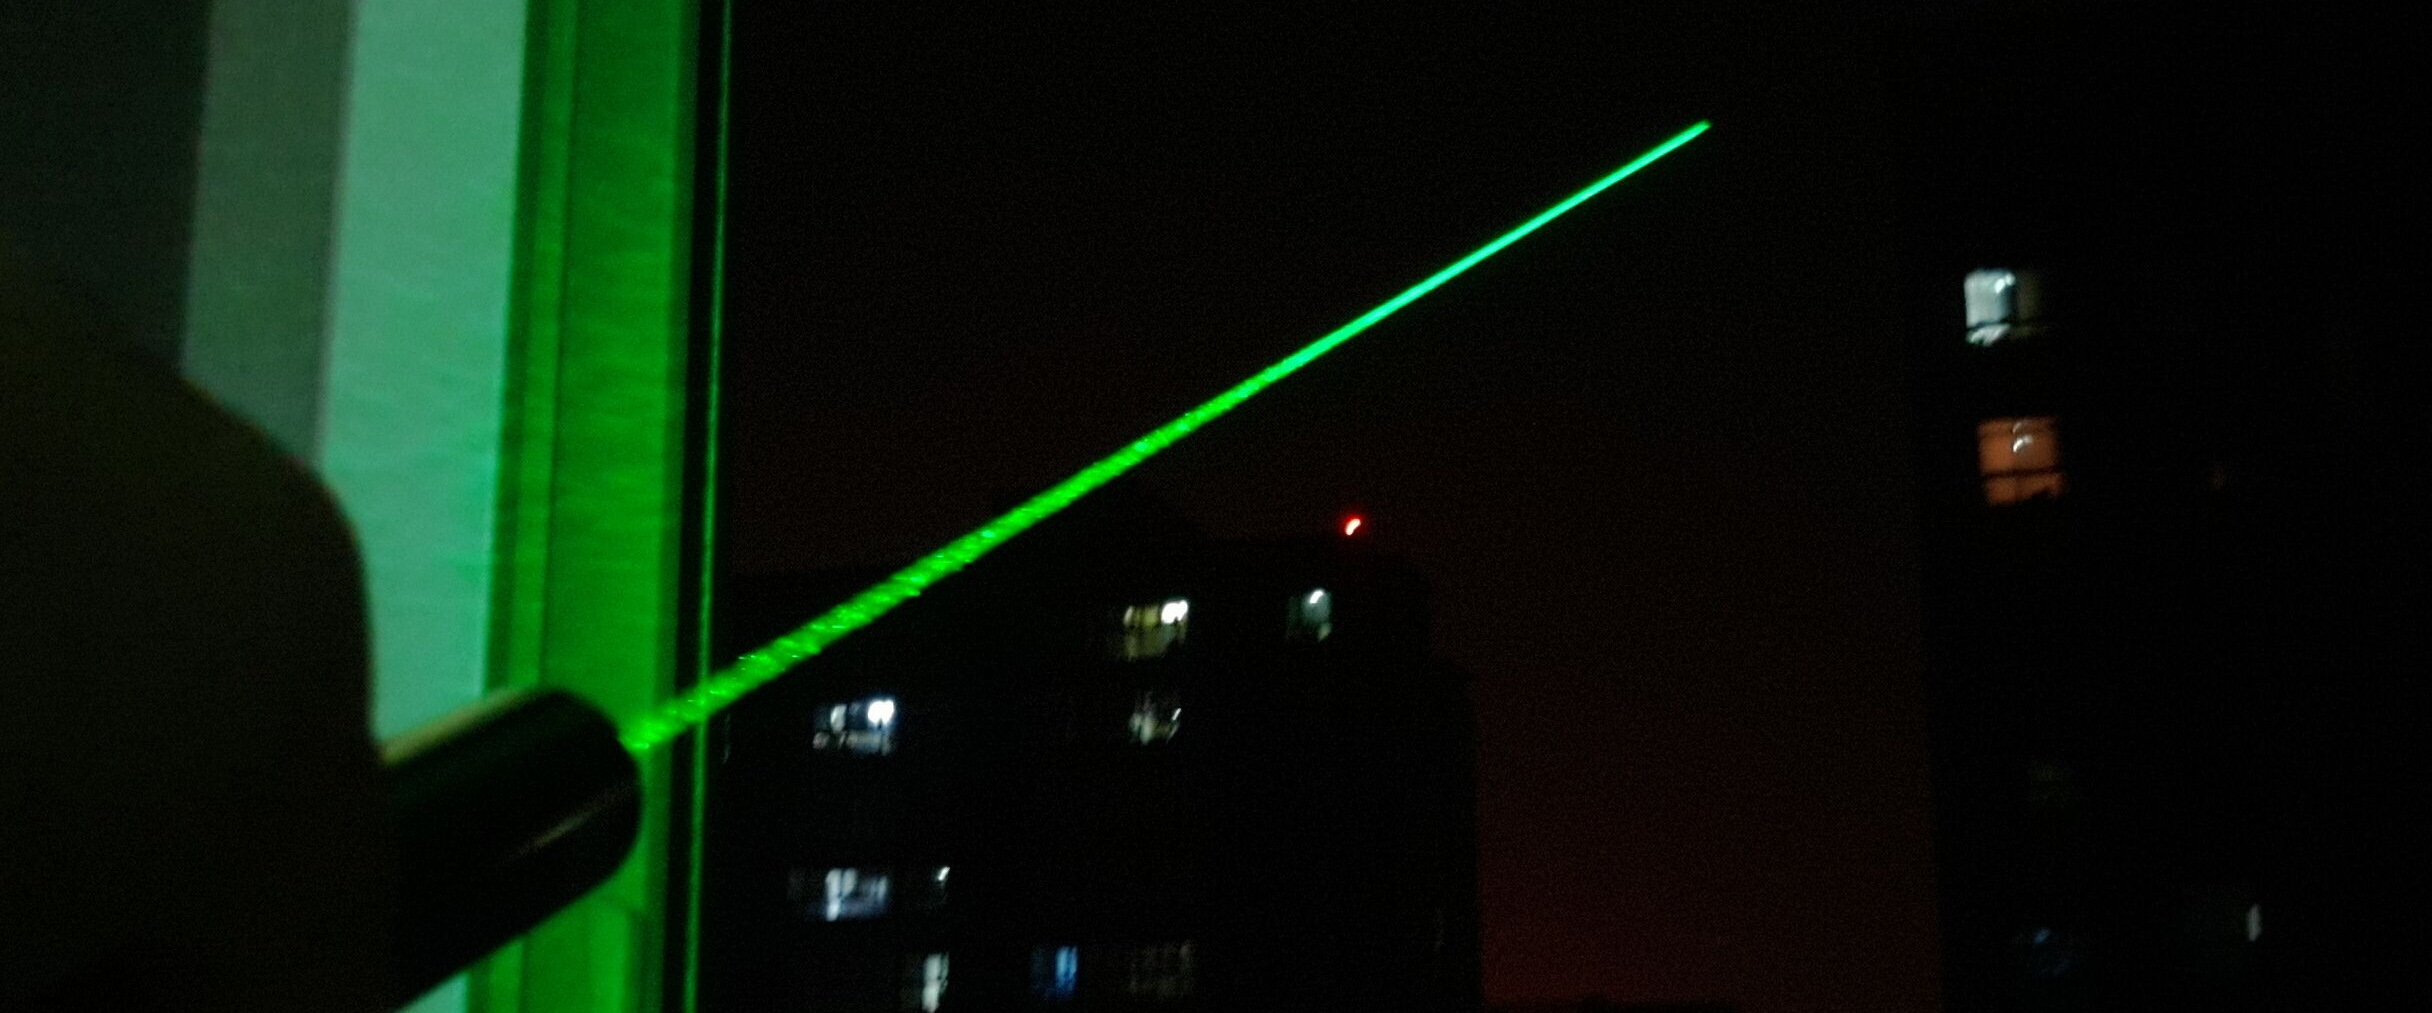 Het meetresultaat van de krachtige laser